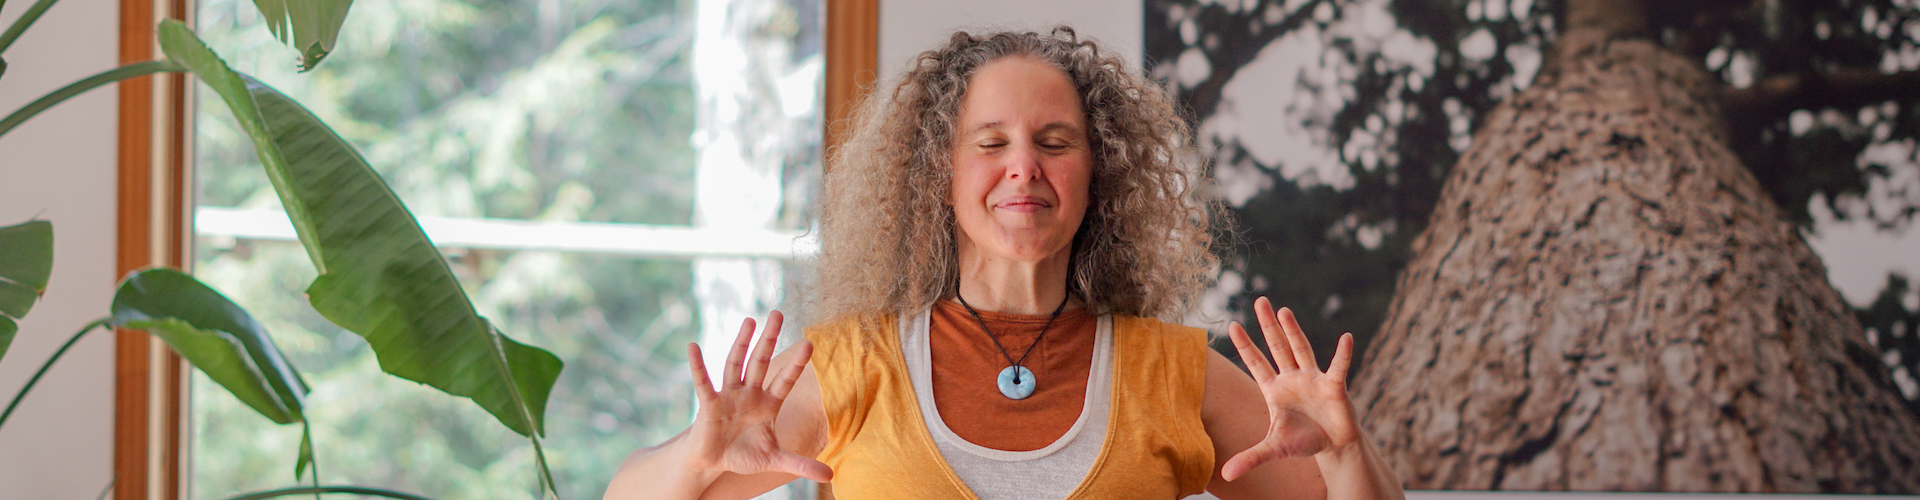 Retraites, ateliers et yoga thérapeutique pour l'amour de soi - Maud Japhet, thérapeute et professeur de yoga